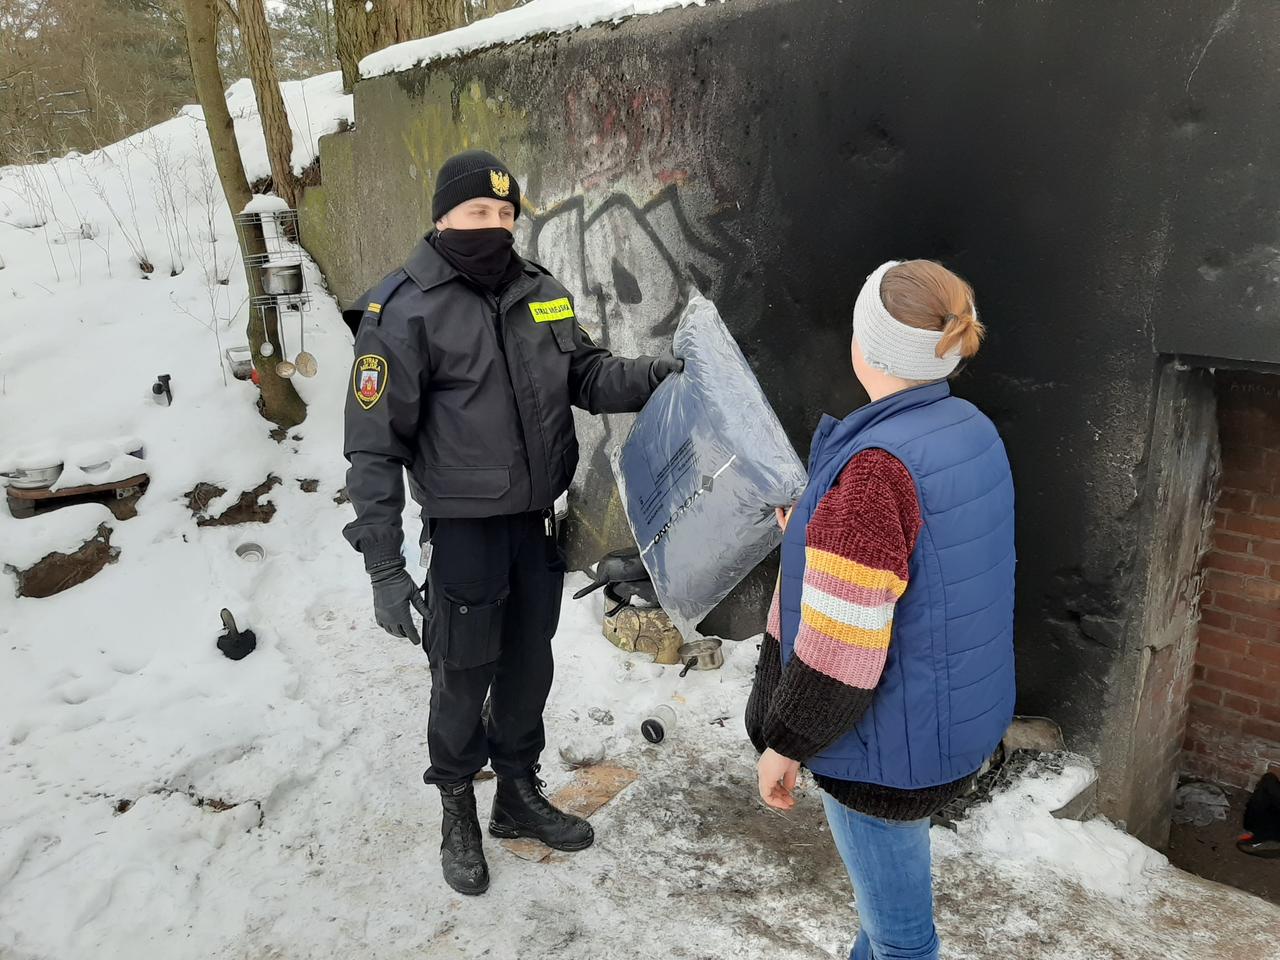 Kurtko-śpiwory dla bezdomnych w Grudziądzu. Ciepła pomoc na zimę od Marszałka [ZDJĘCIA, AUDIO]